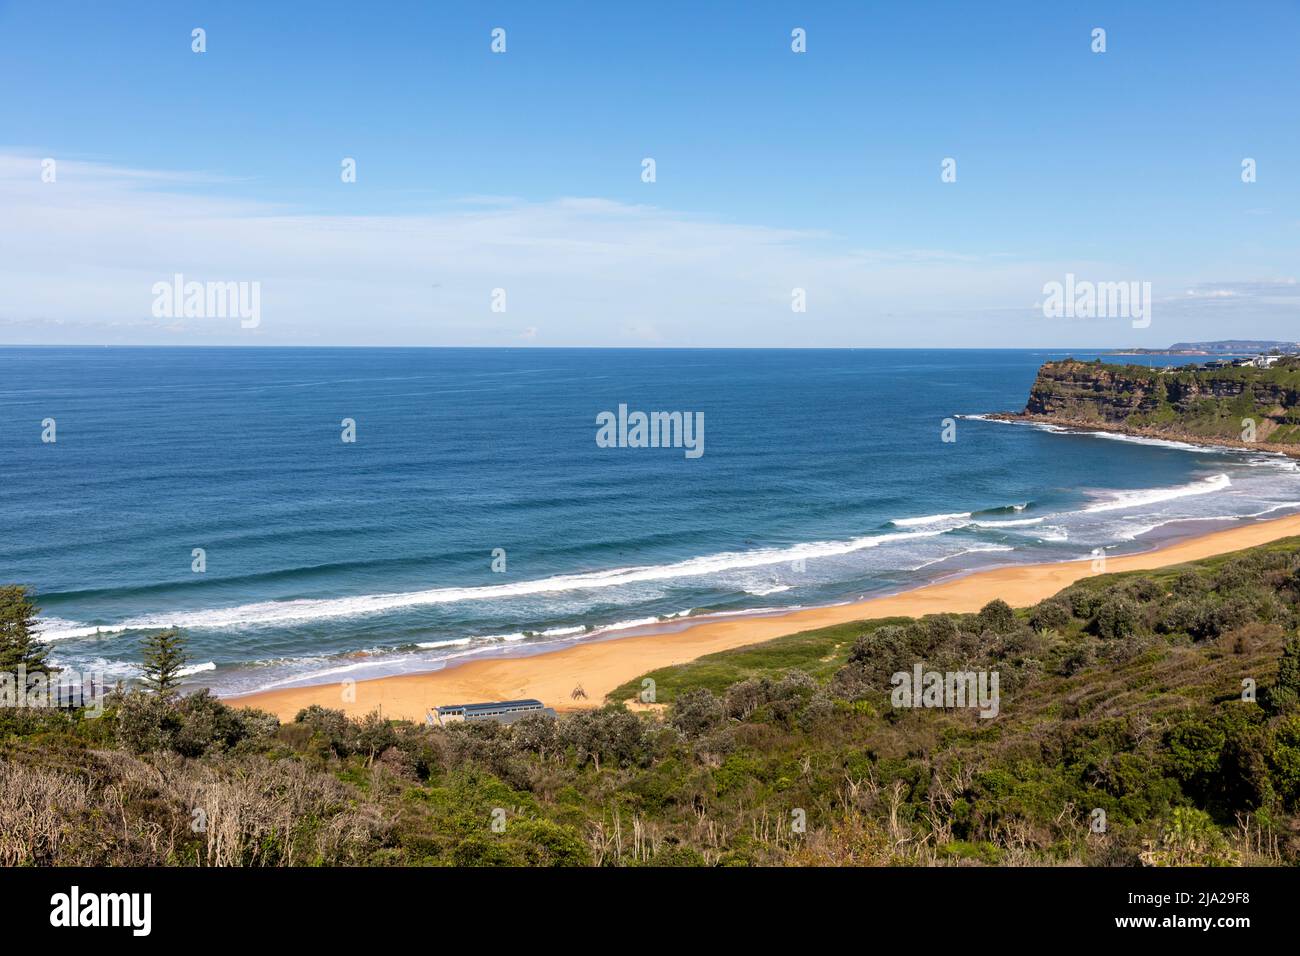 Plage de Bungan à Sydney, l'une des plages de la côte est, vue sur l'océan et la baie de Bongin, Sydney, Nouvelle-Galles du Sud, Australie Banque D'Images